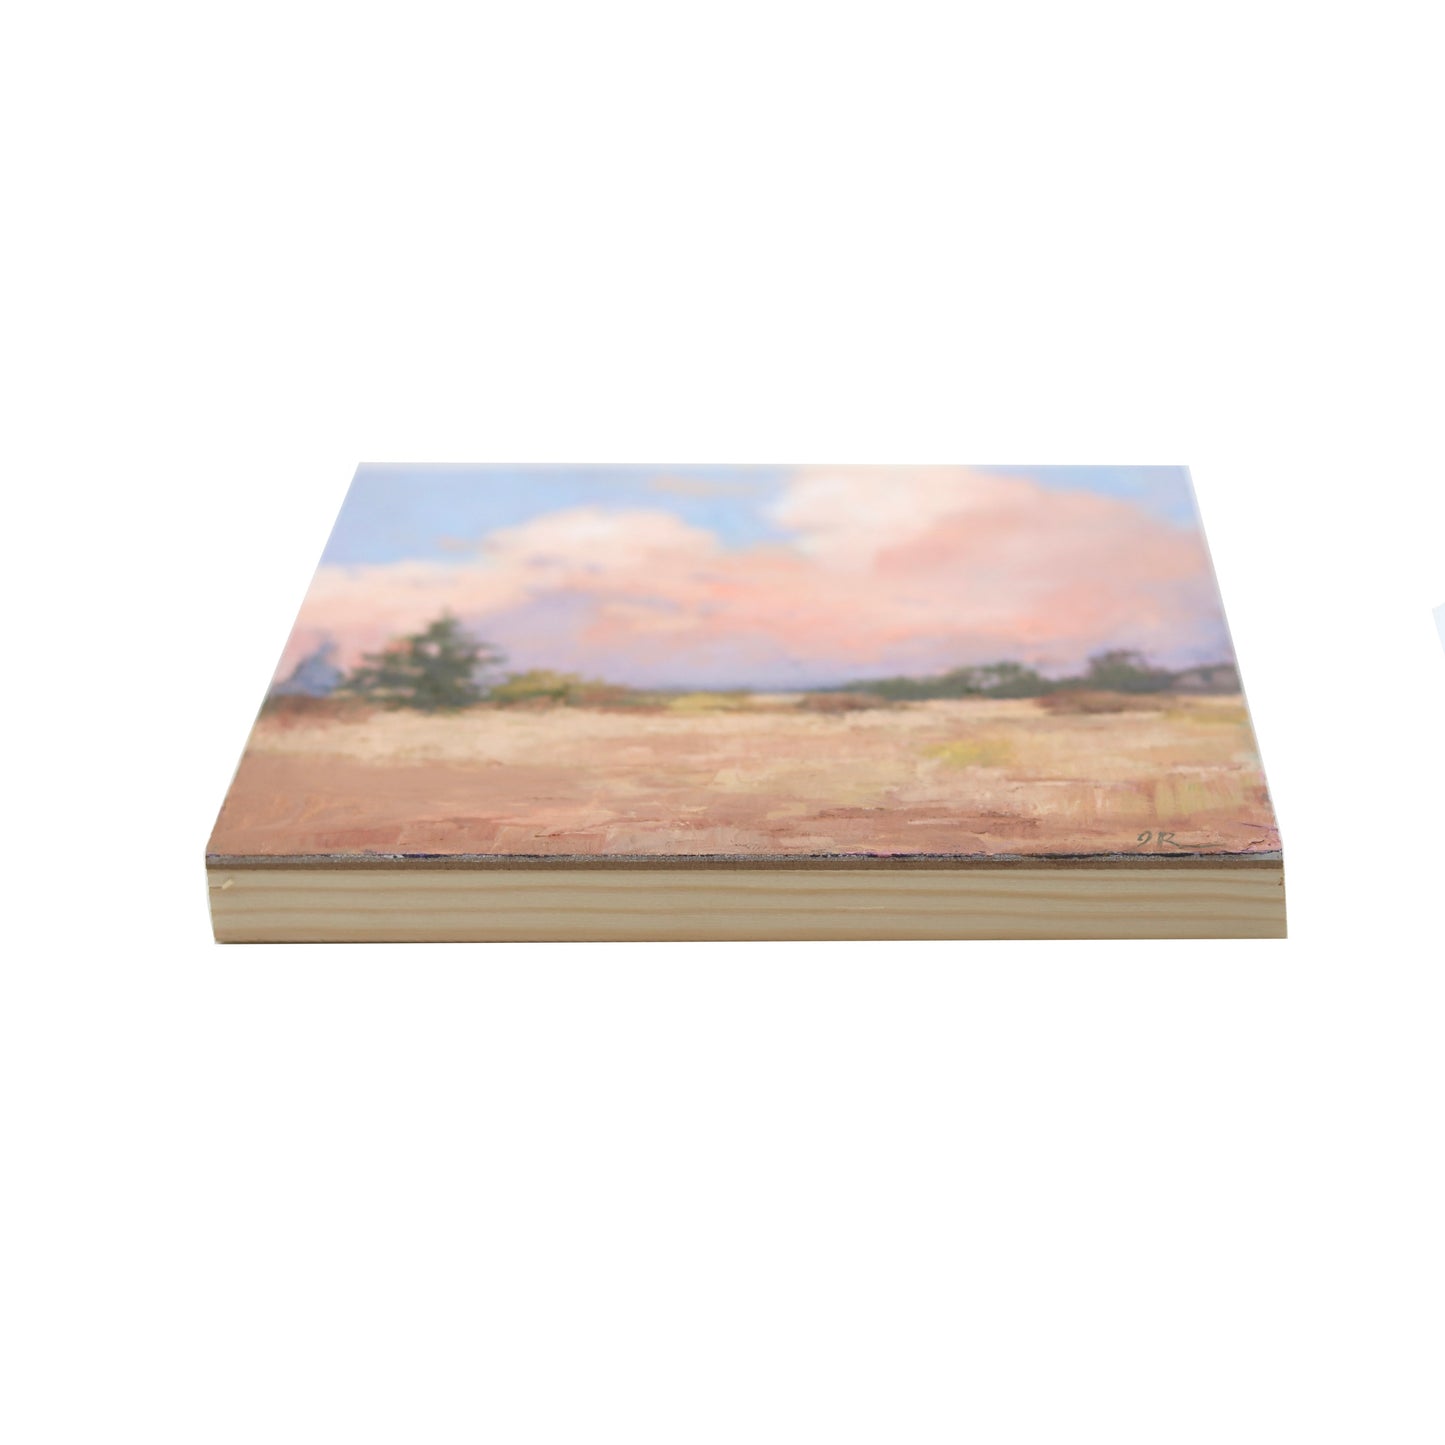 Landscape 11 | Original Oil Painting | 8”x8”